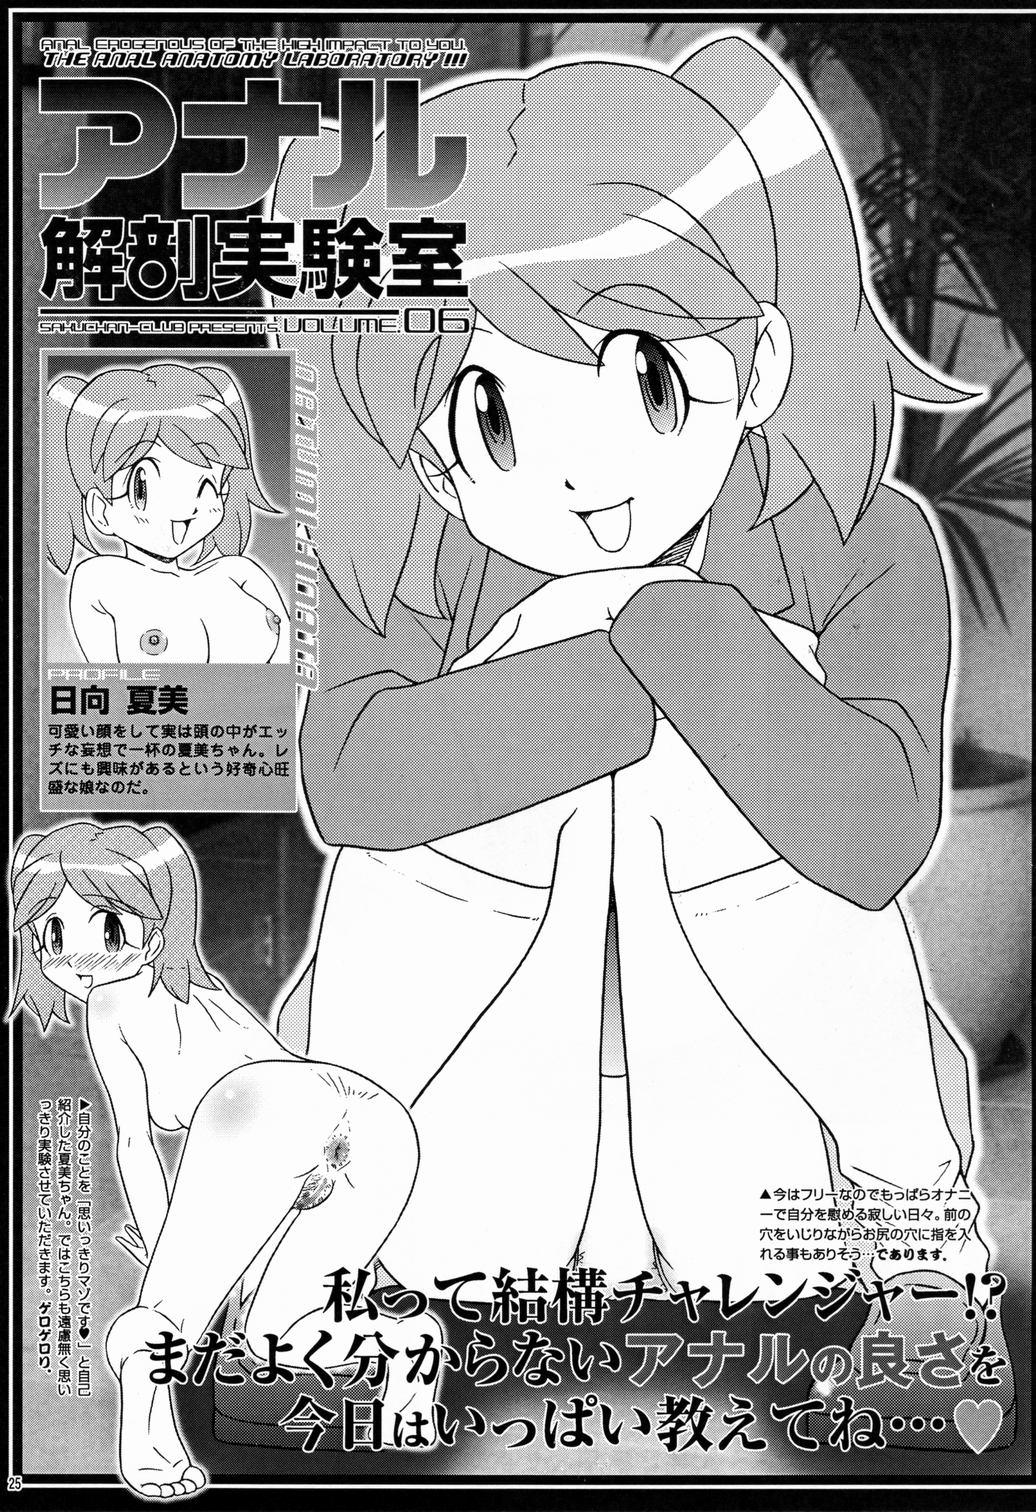 Saku-chan Club Vol. 6 24